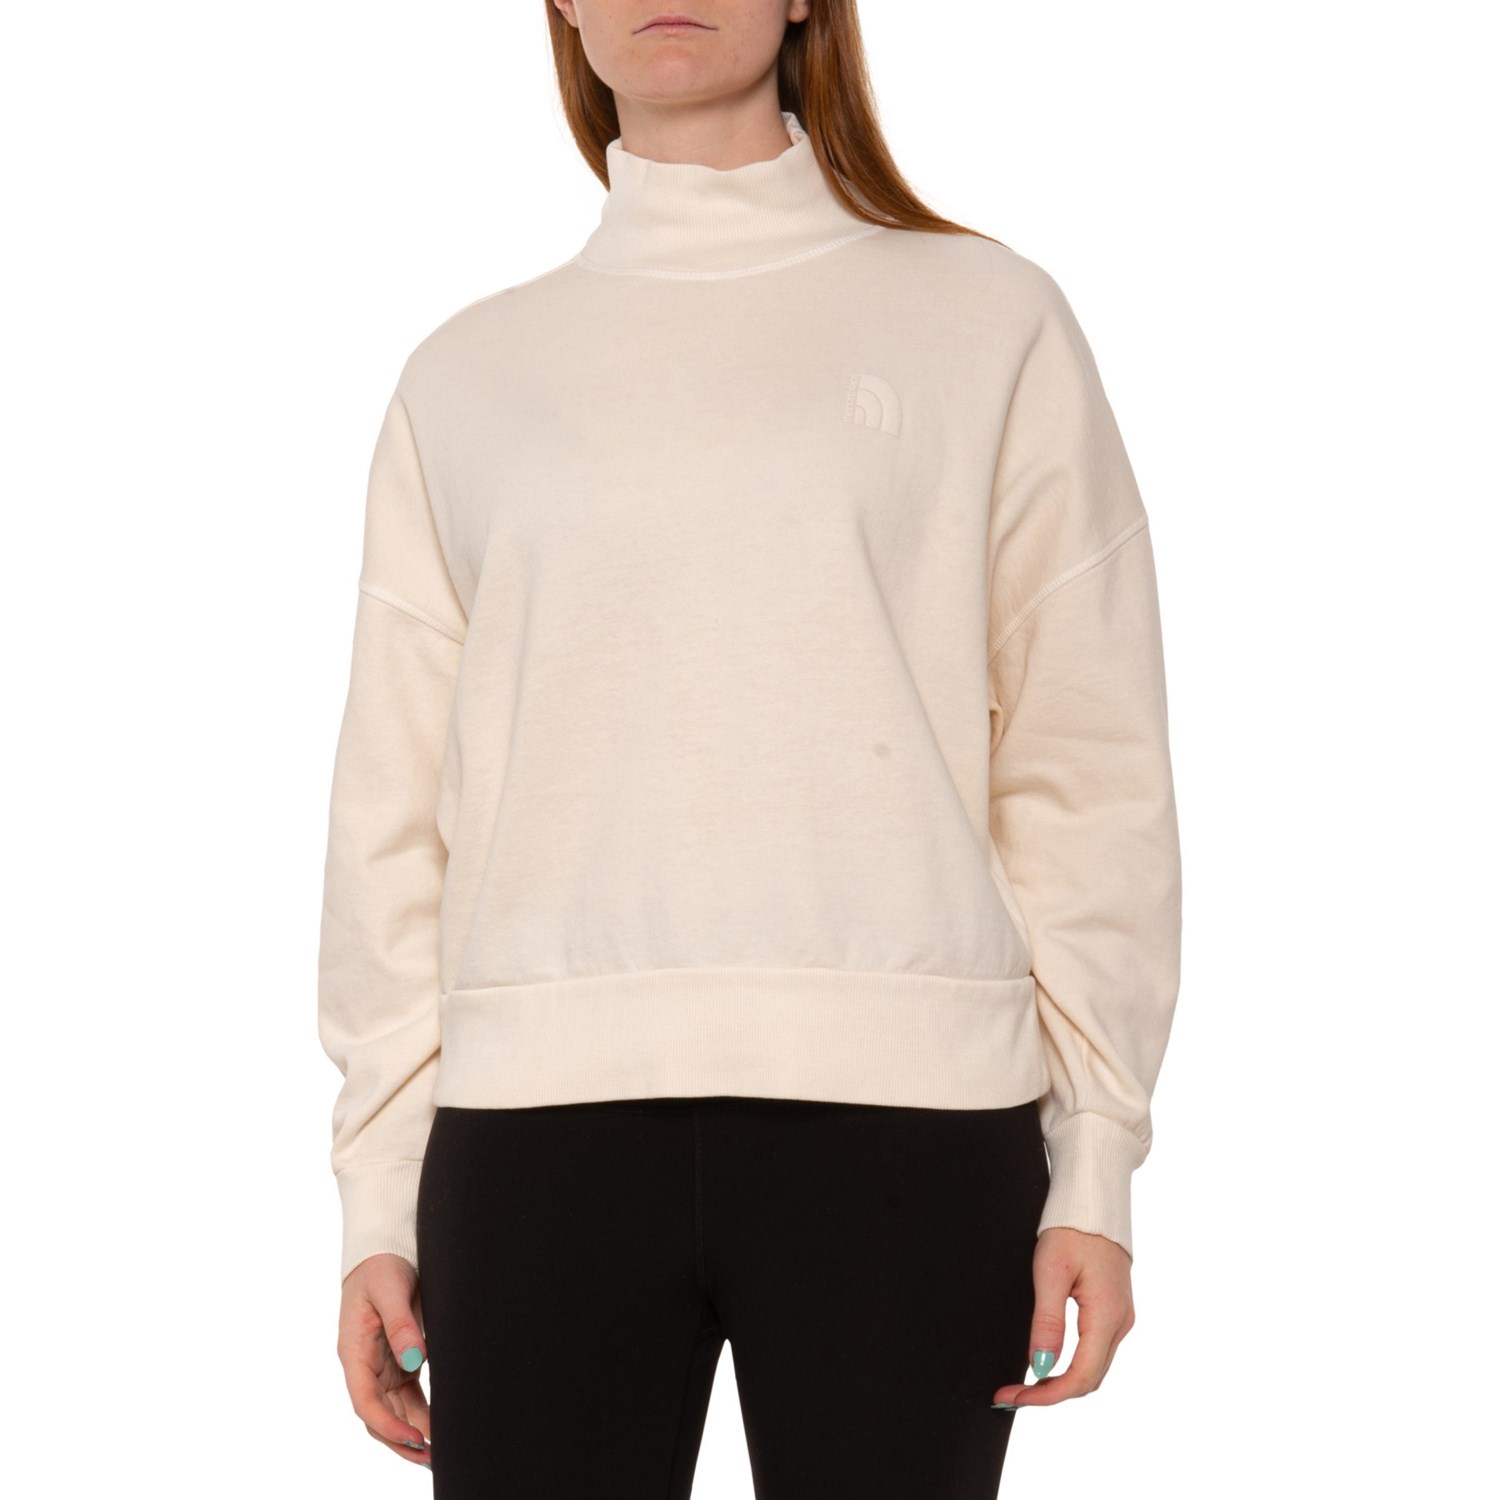 ザ・ノース・フェイス (取寄) ノースフェイス ガーメントダイ モック ネック スウェットシャツ The North Face Garment-Dyed Mock Neck Sweatshirt Gardenia White